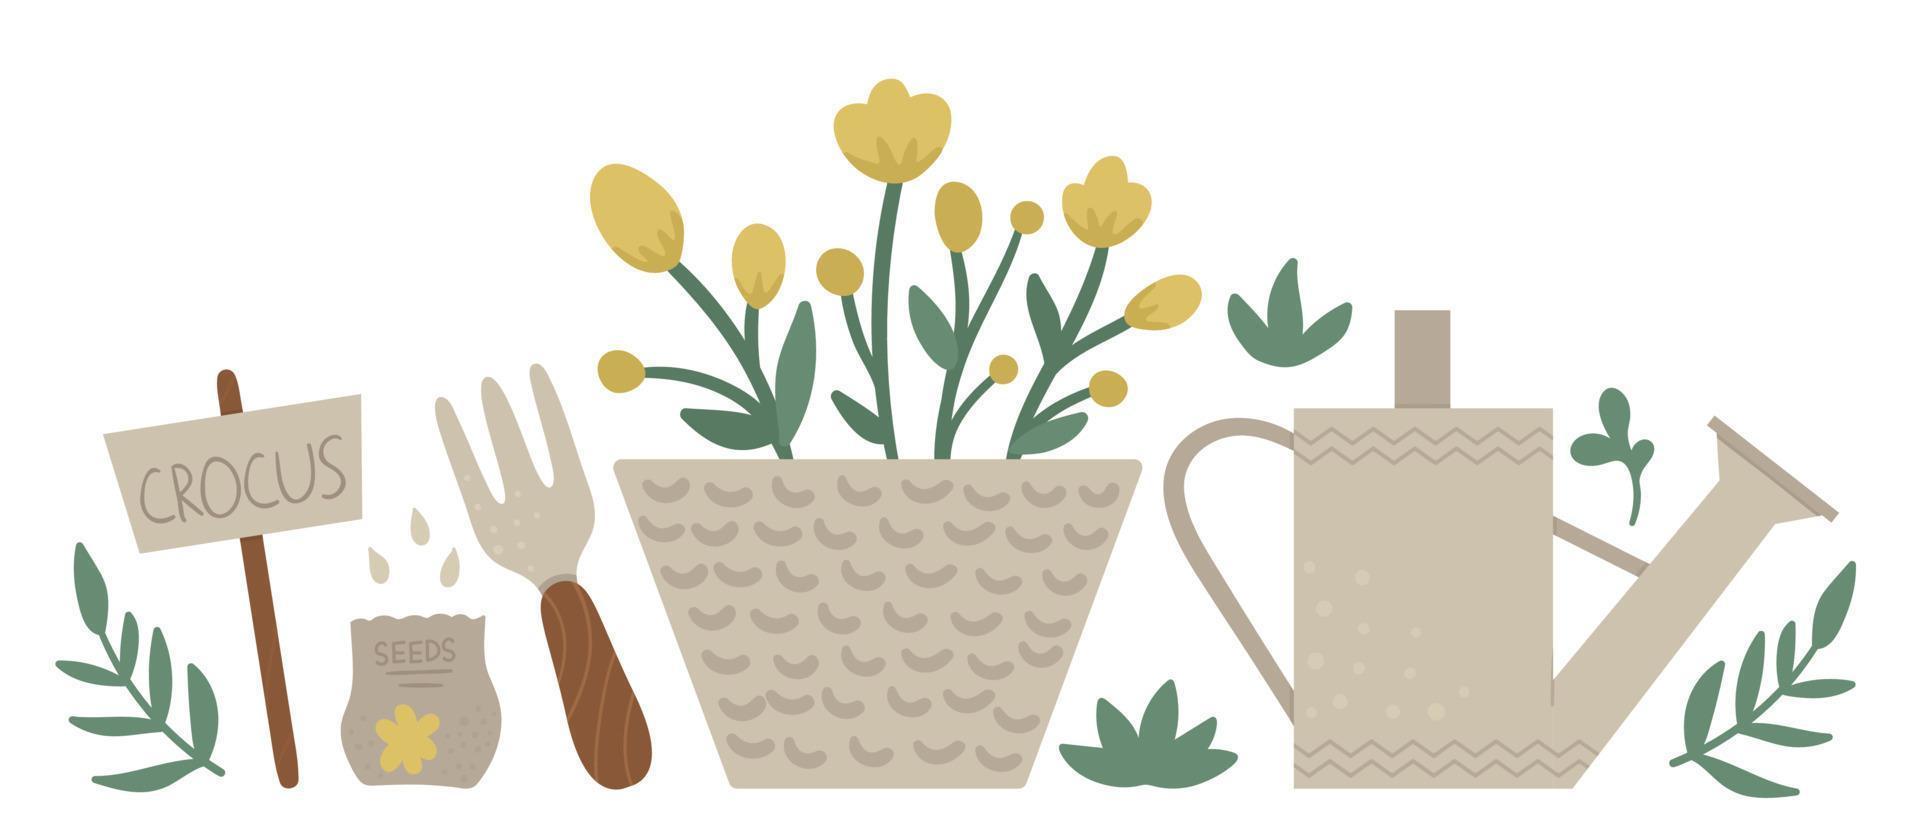 vectorillustratie van kleurrijke tuingereedschap met bloemen en planten. vlakke stijl lente of zomer foto geïsoleerd op een witte achtergrond. tuinieren thema concept. vector